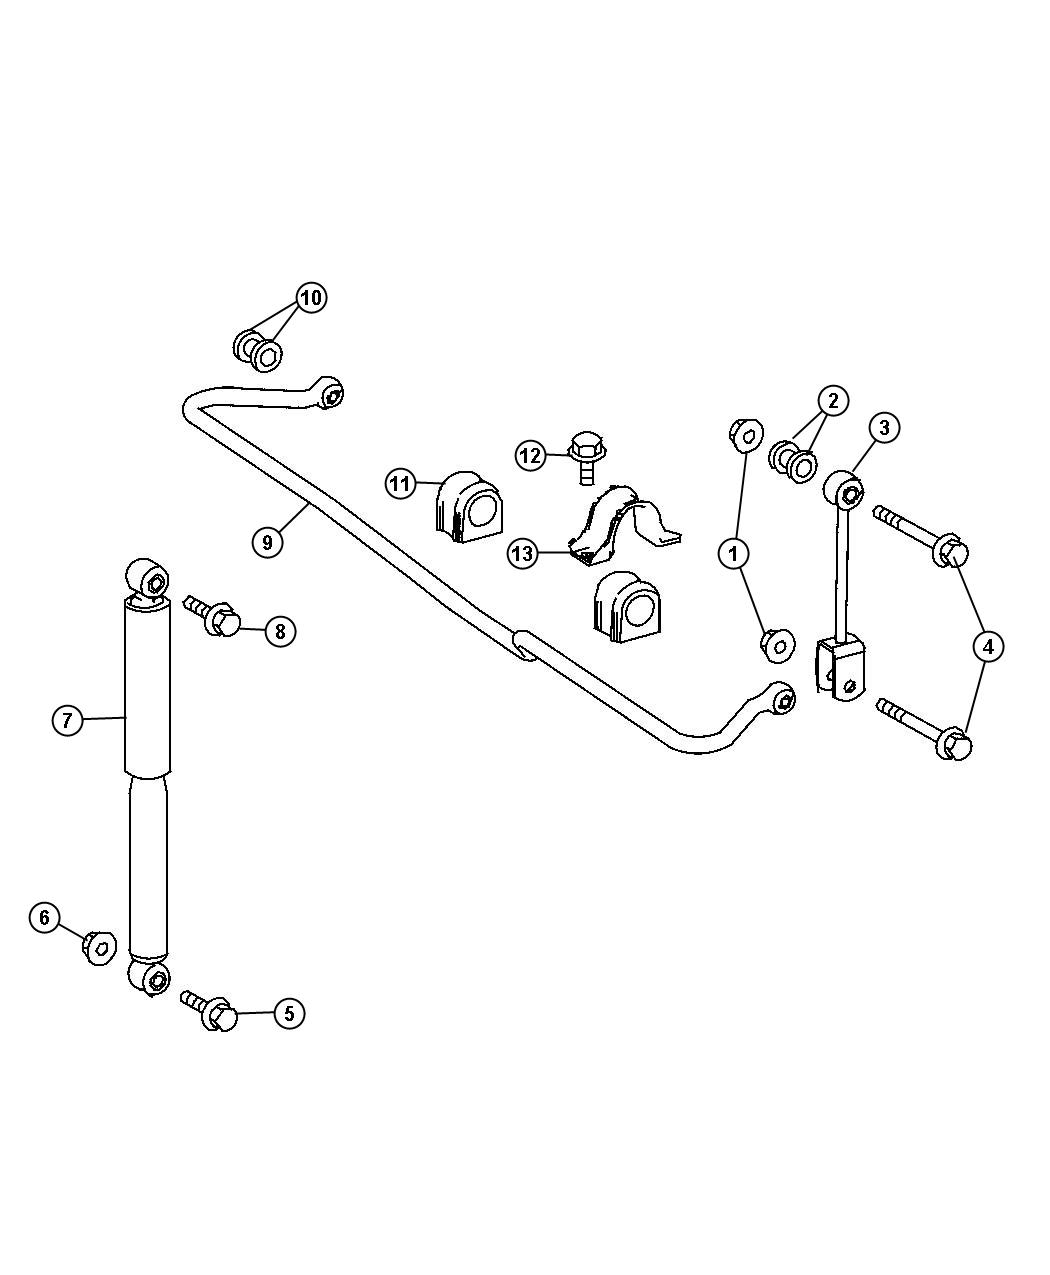 Rear Shocks and Stabilizer Bar. Diagram